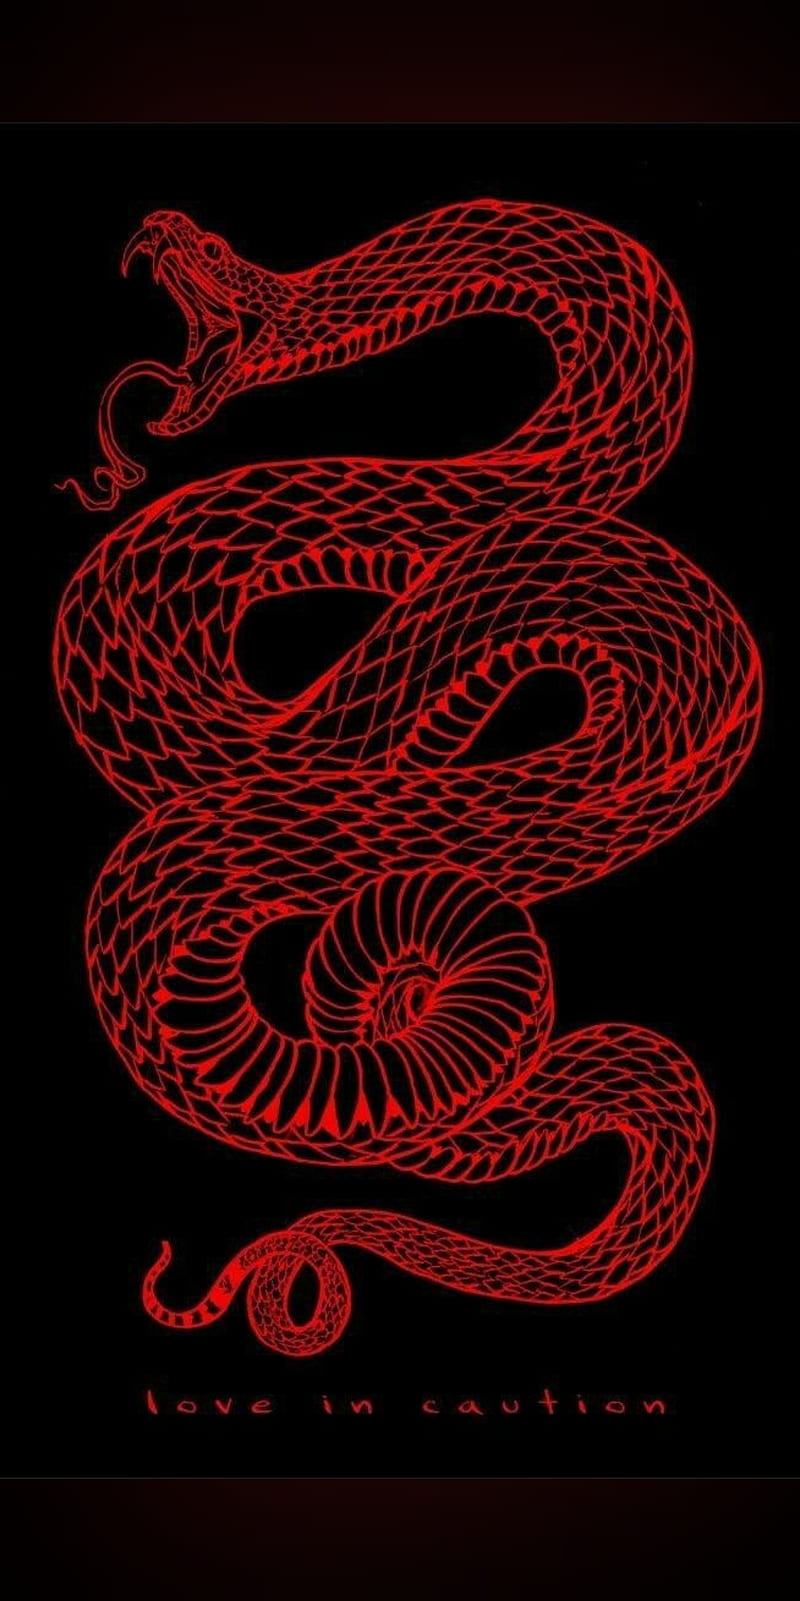 Red snake wallpaper for phone. - Dragon